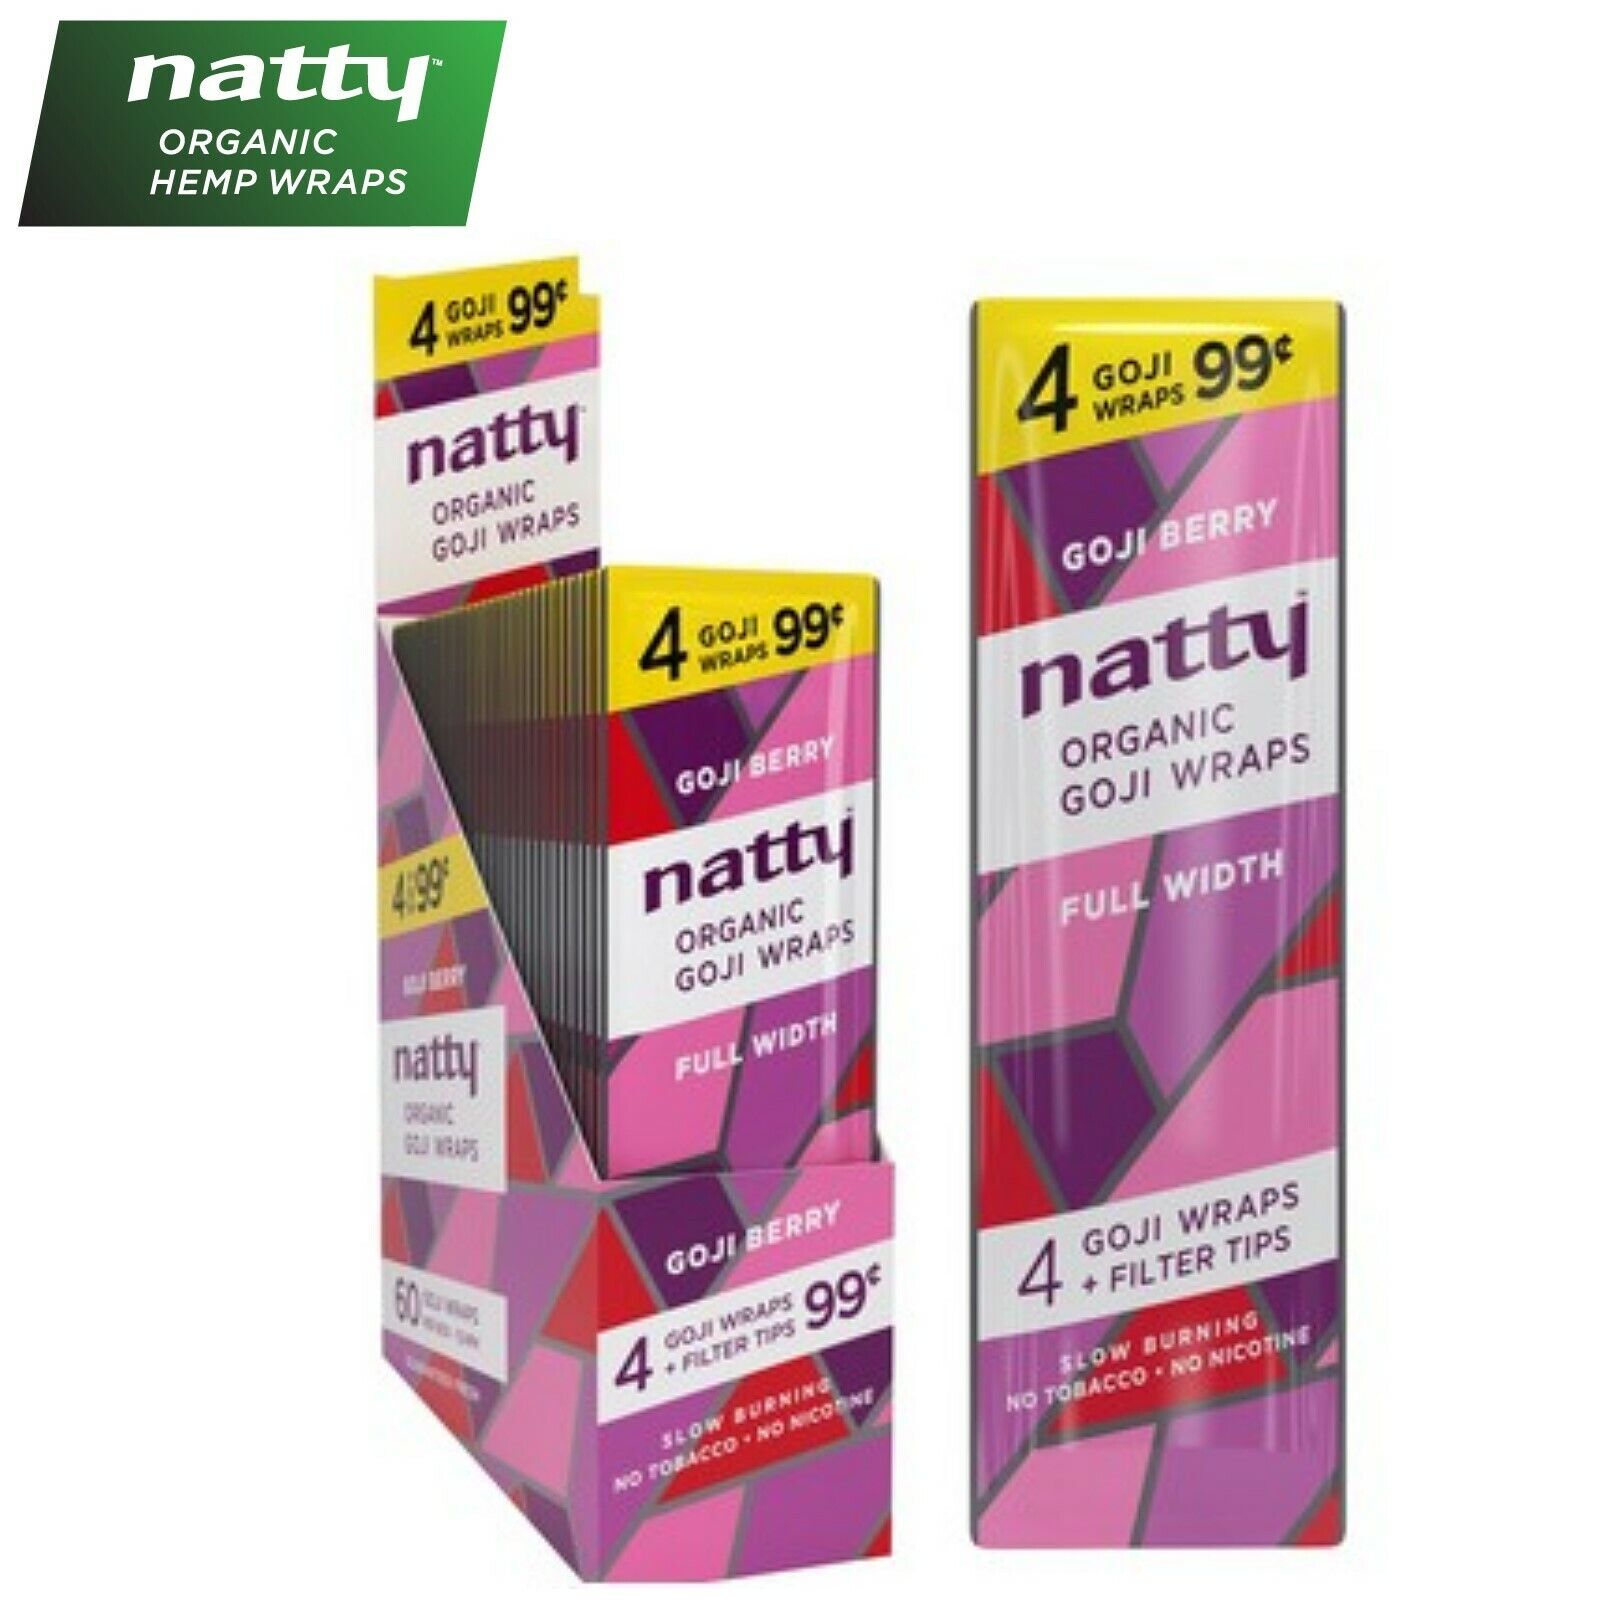 NATTY Organic GOJI BERRY Flavored Full-Width Herbal Wraps Full Box 15/4CT